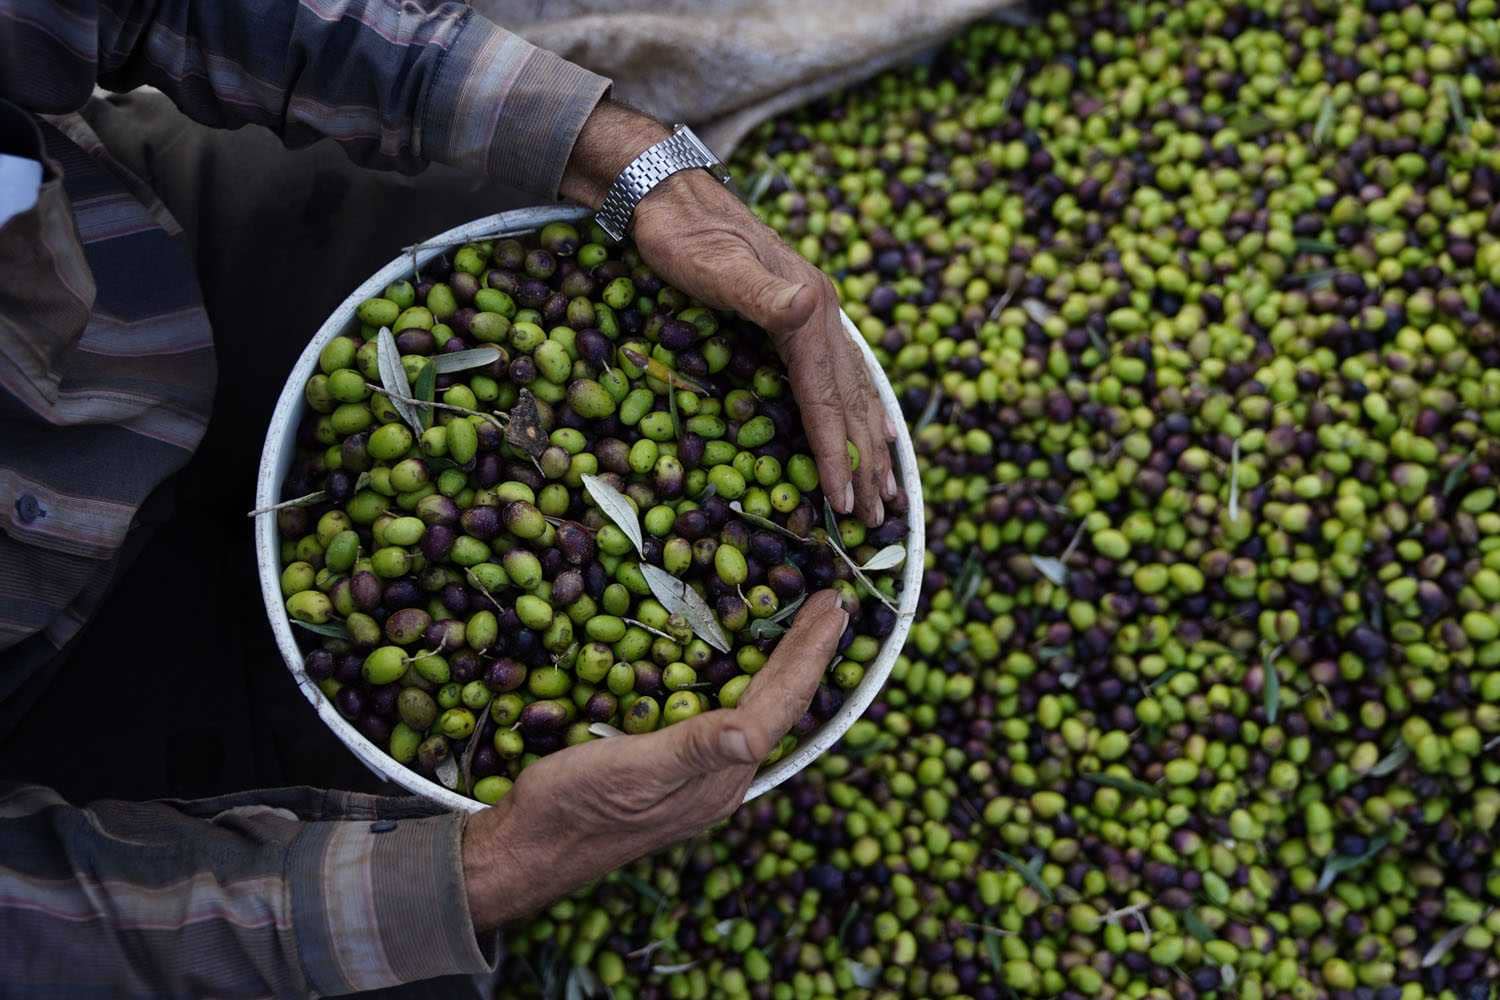 Afrika-Mittlerer Osten-Business-Nöte-im-Libanon-Schwerpunkt-auf-Exporte-Olivenöl-Zeiten verlagern